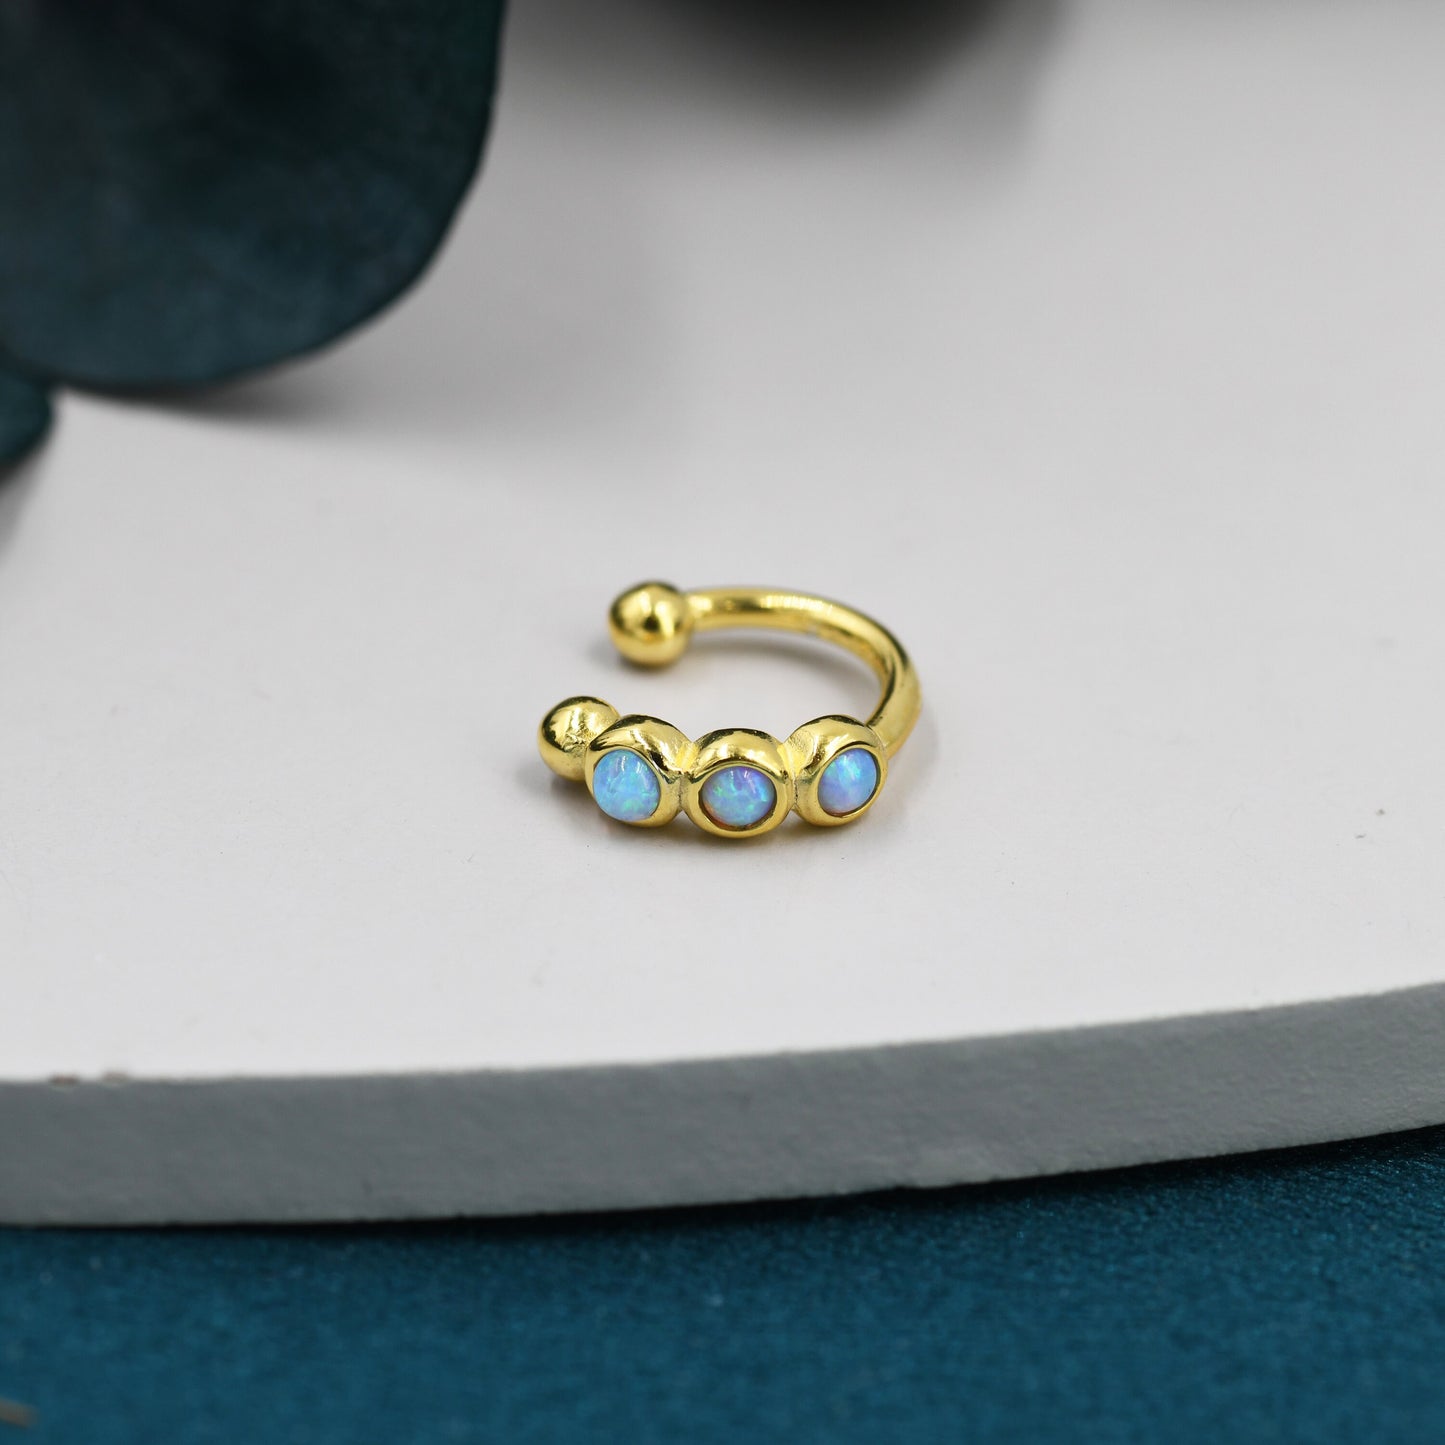 Blue Opal Ear Cuff in Sterling Silver, Silver or Gold, Simple Piercing Free Earrings, Minimalist Ear Cuff, Opal Ear Cuff